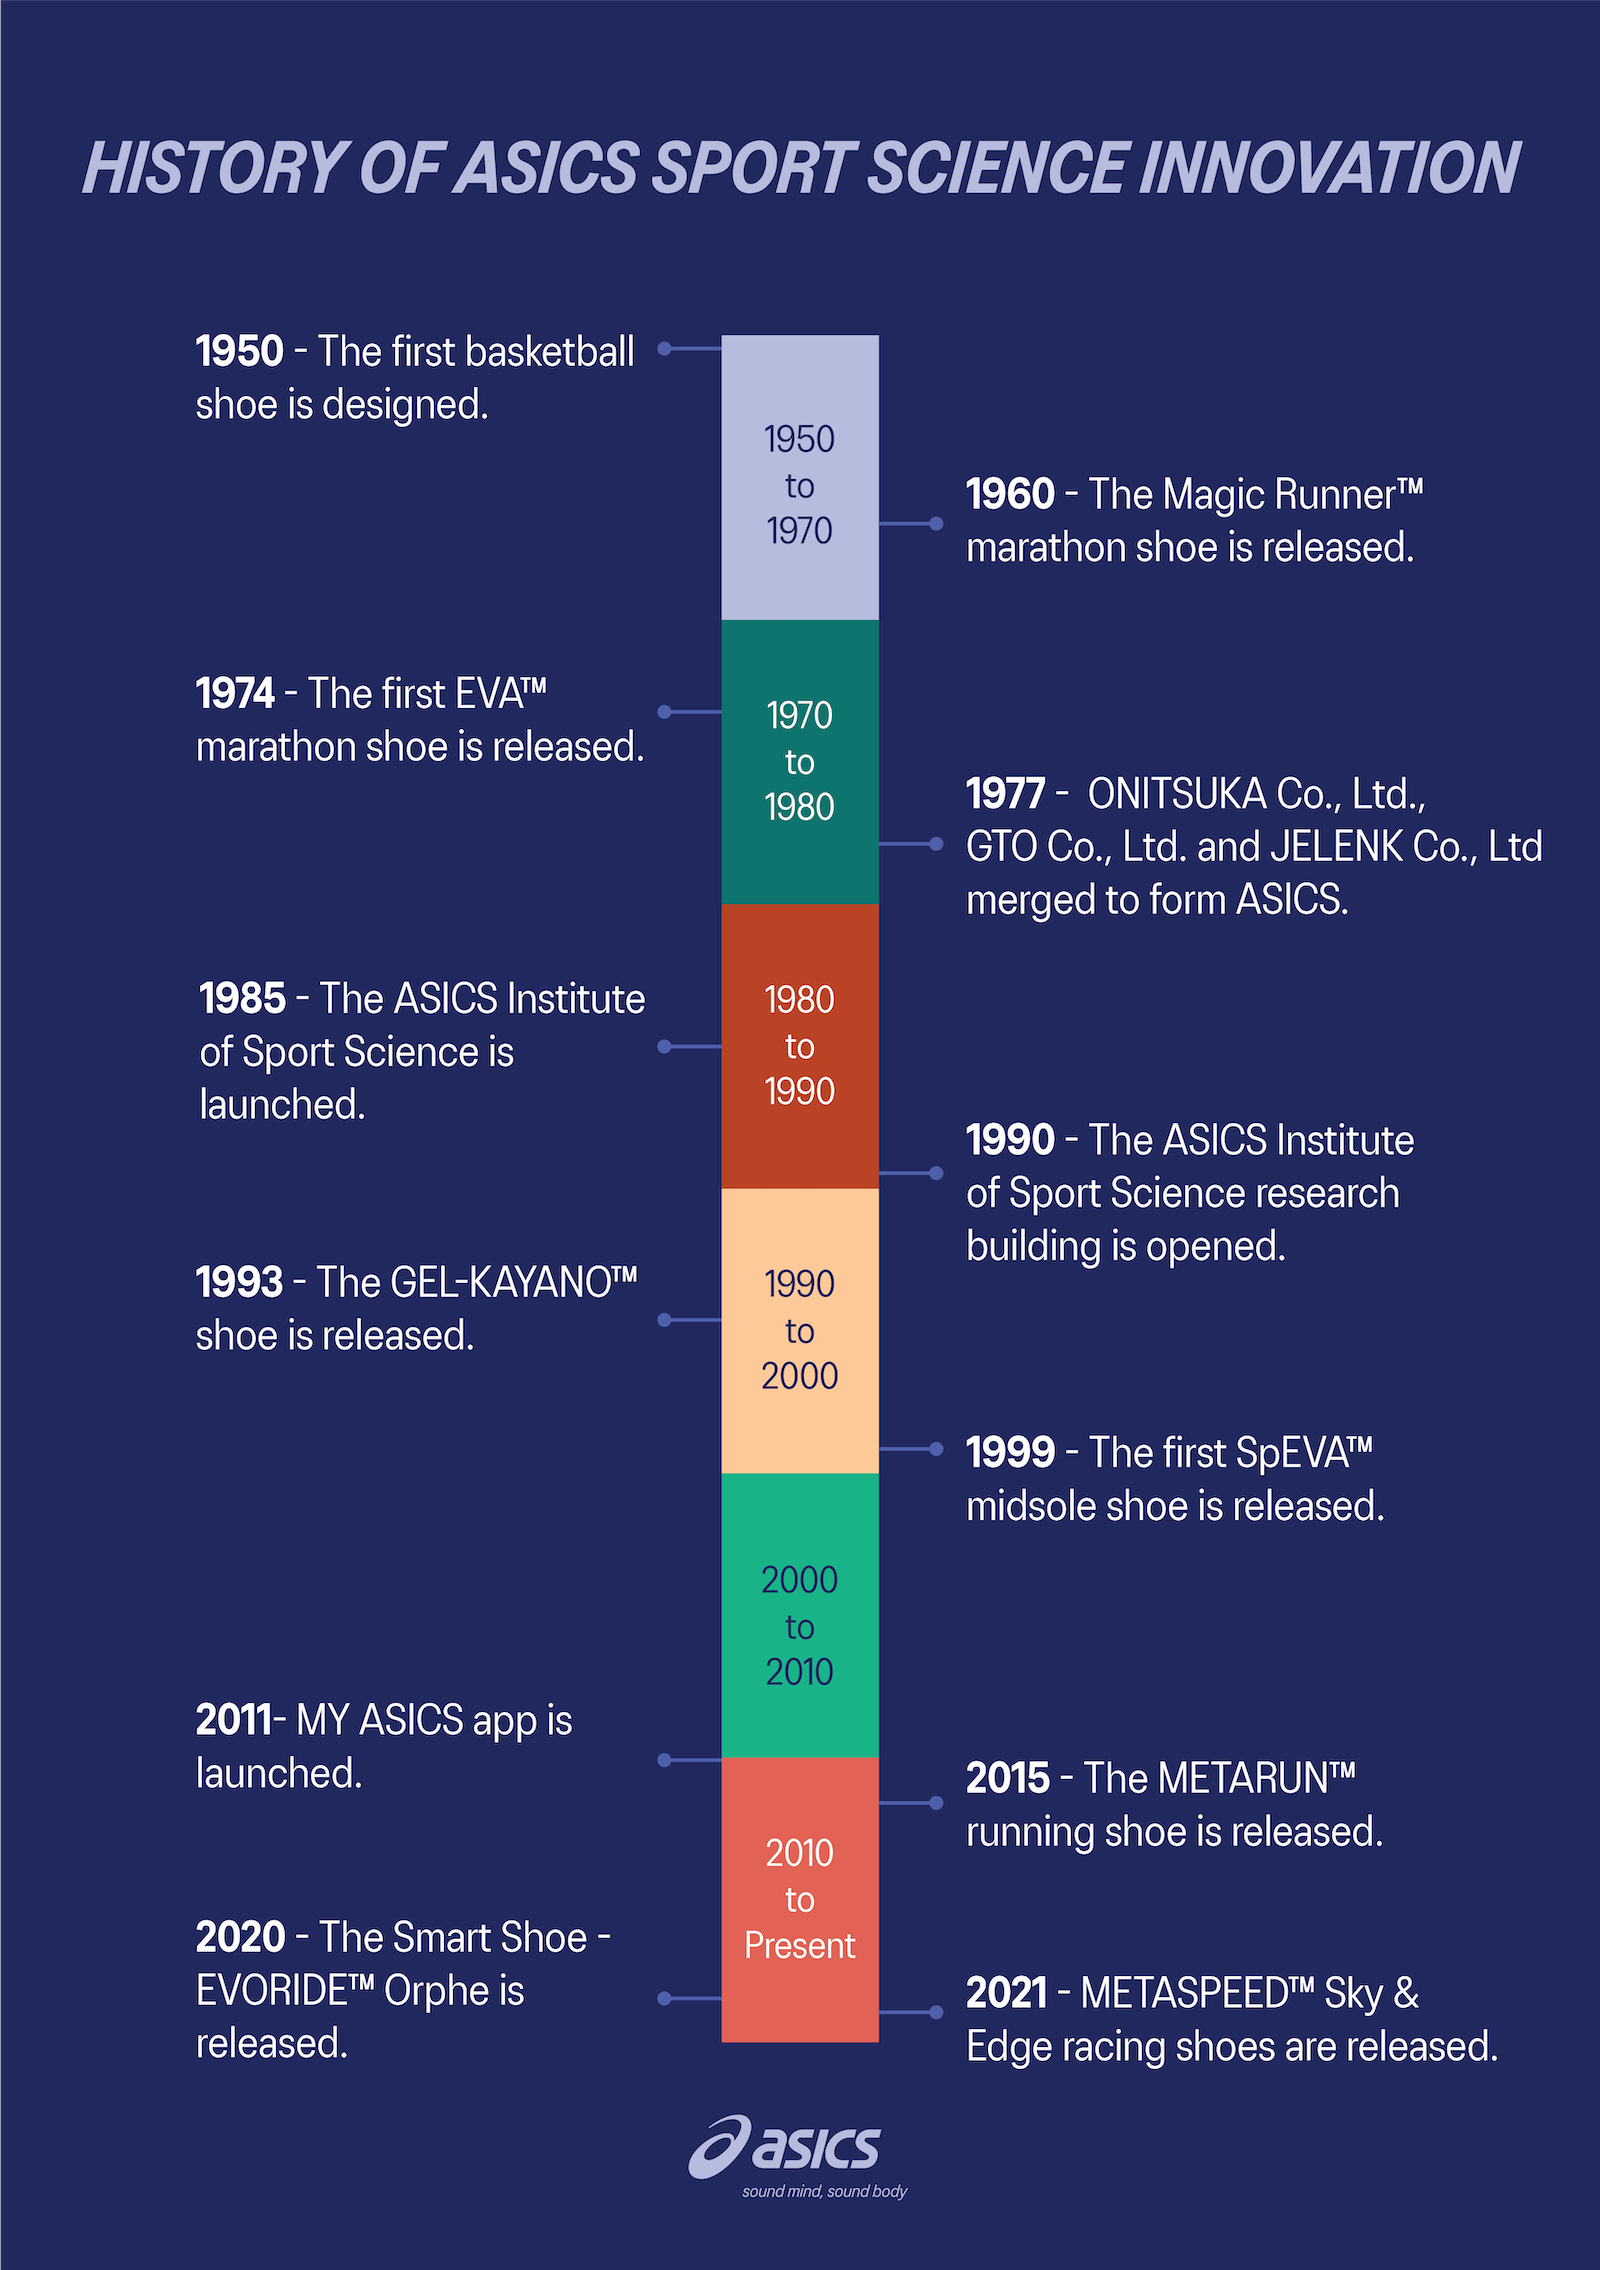 History of ASICS sport science innovation